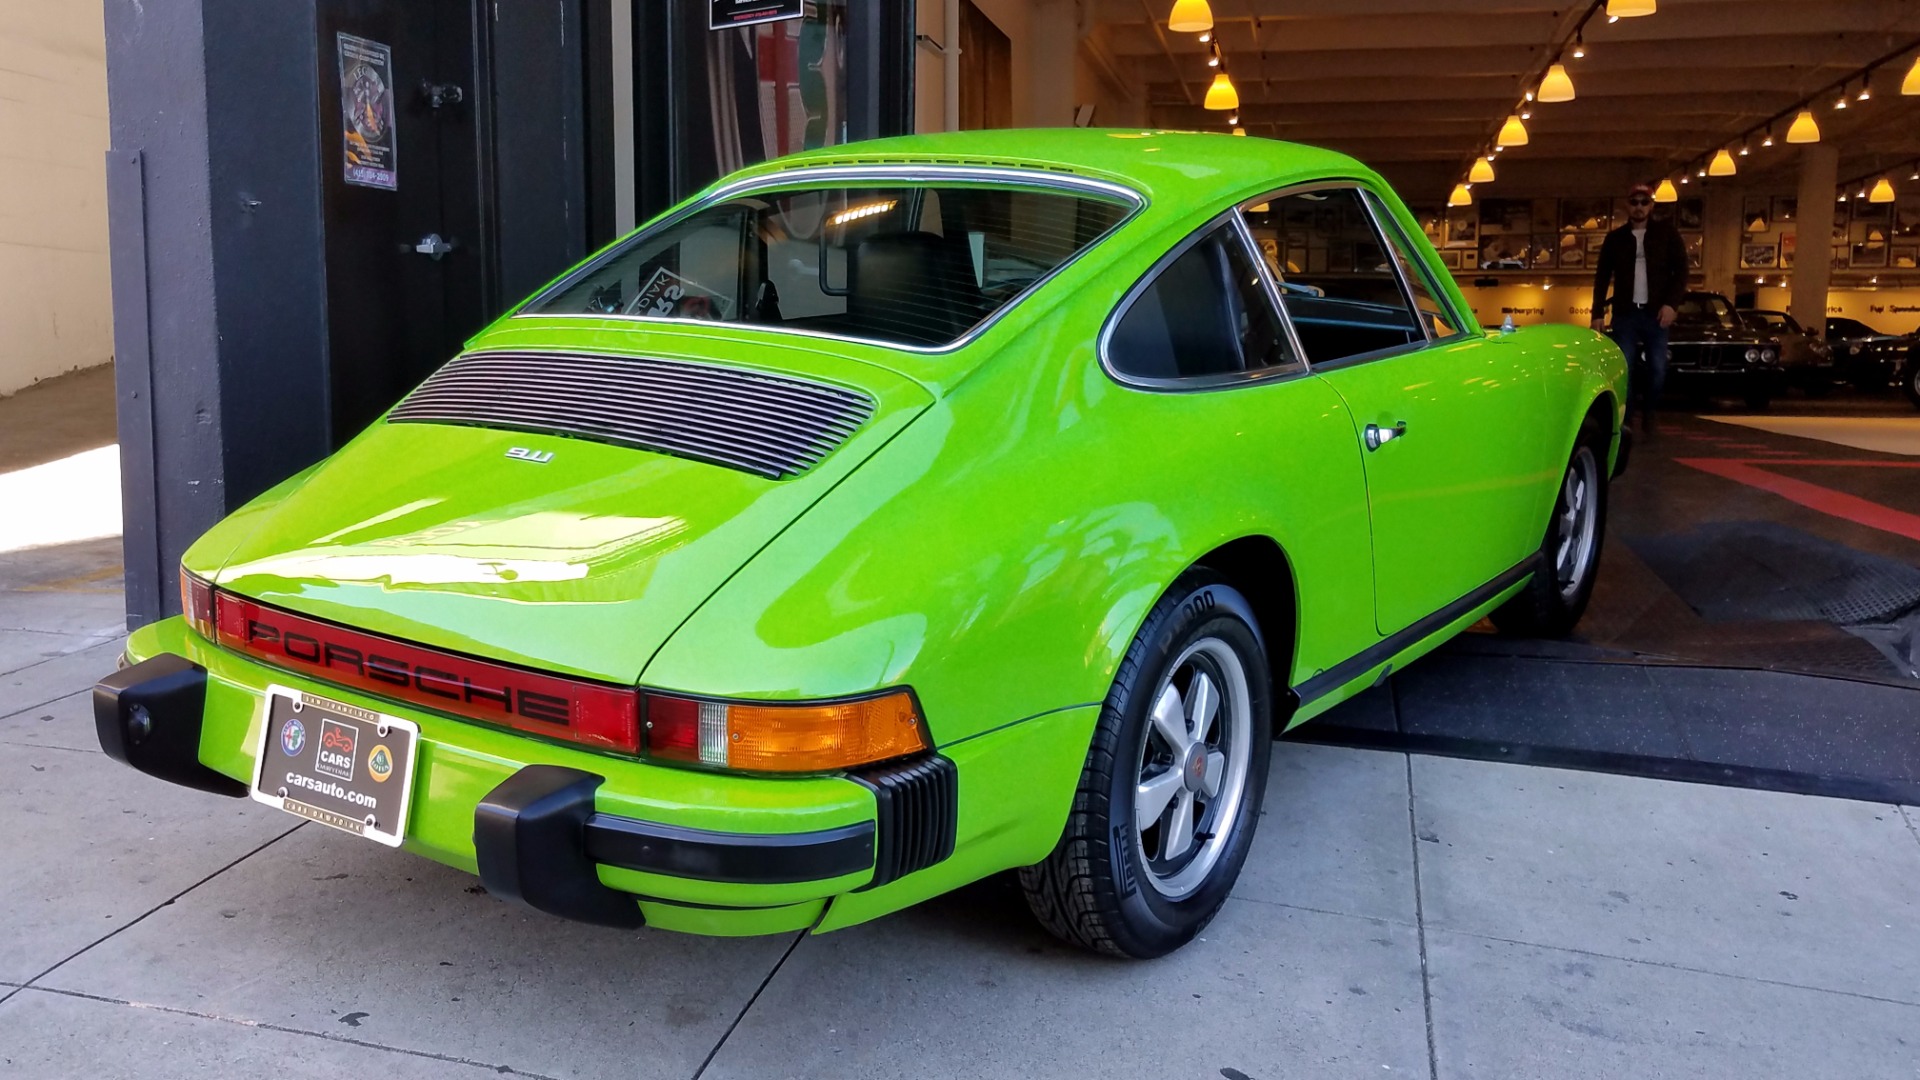 Used 1974 Porsche 911